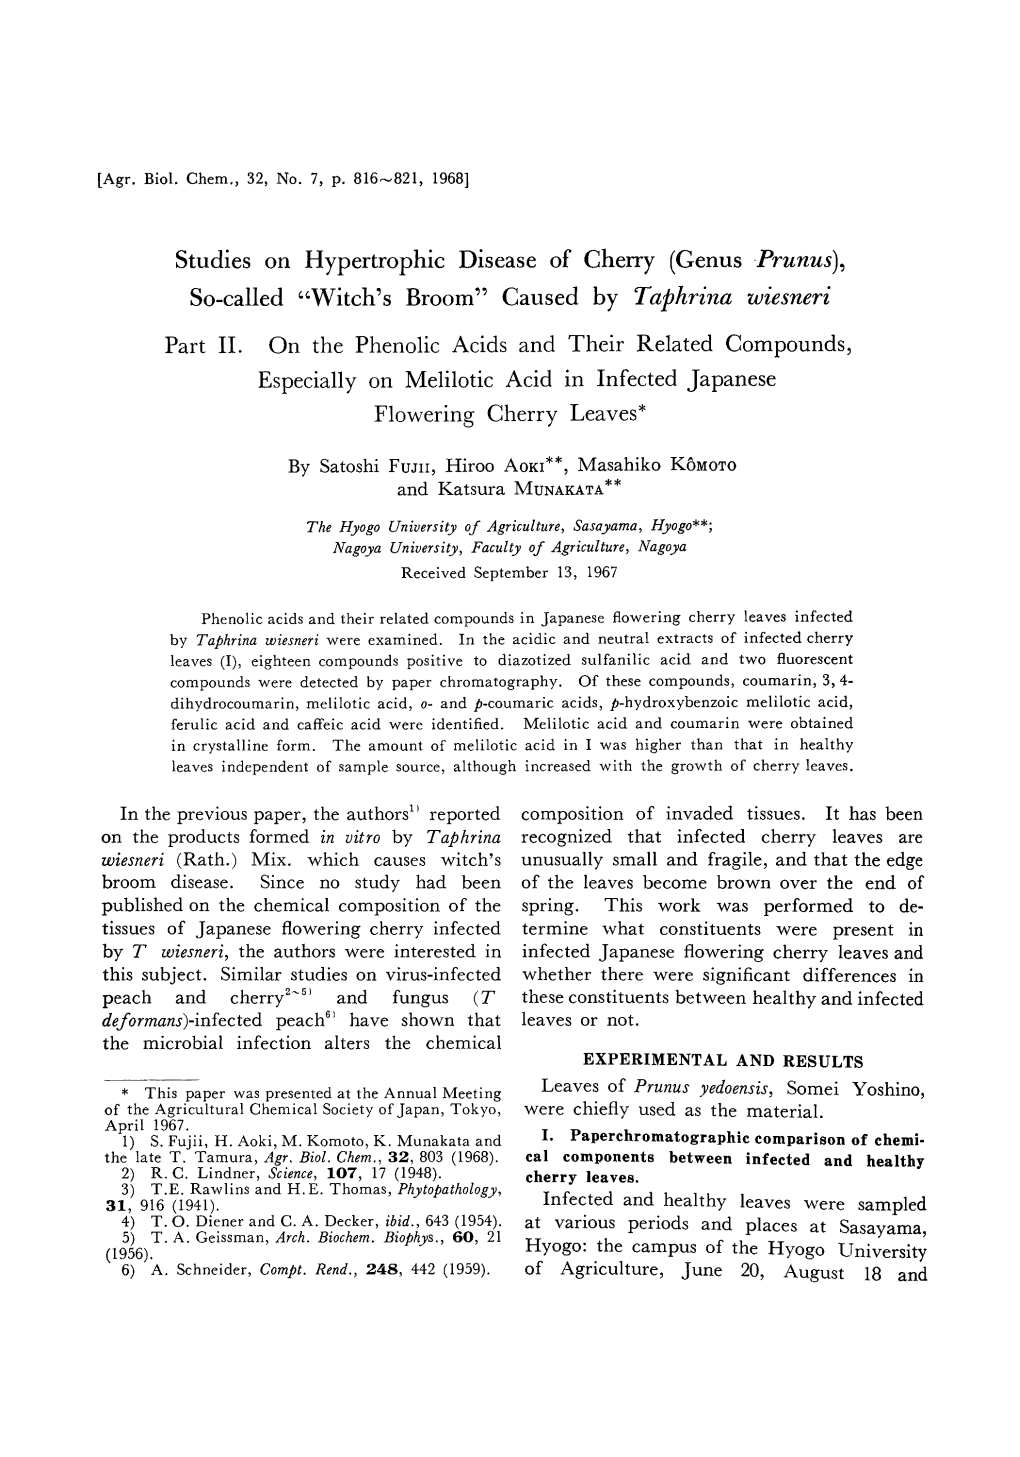 Studies on Hypertrophic Disease of Cherry (Genus Prunus), So-Called "Witch's Broom" Caused by Taphrina Wiesneri Part II